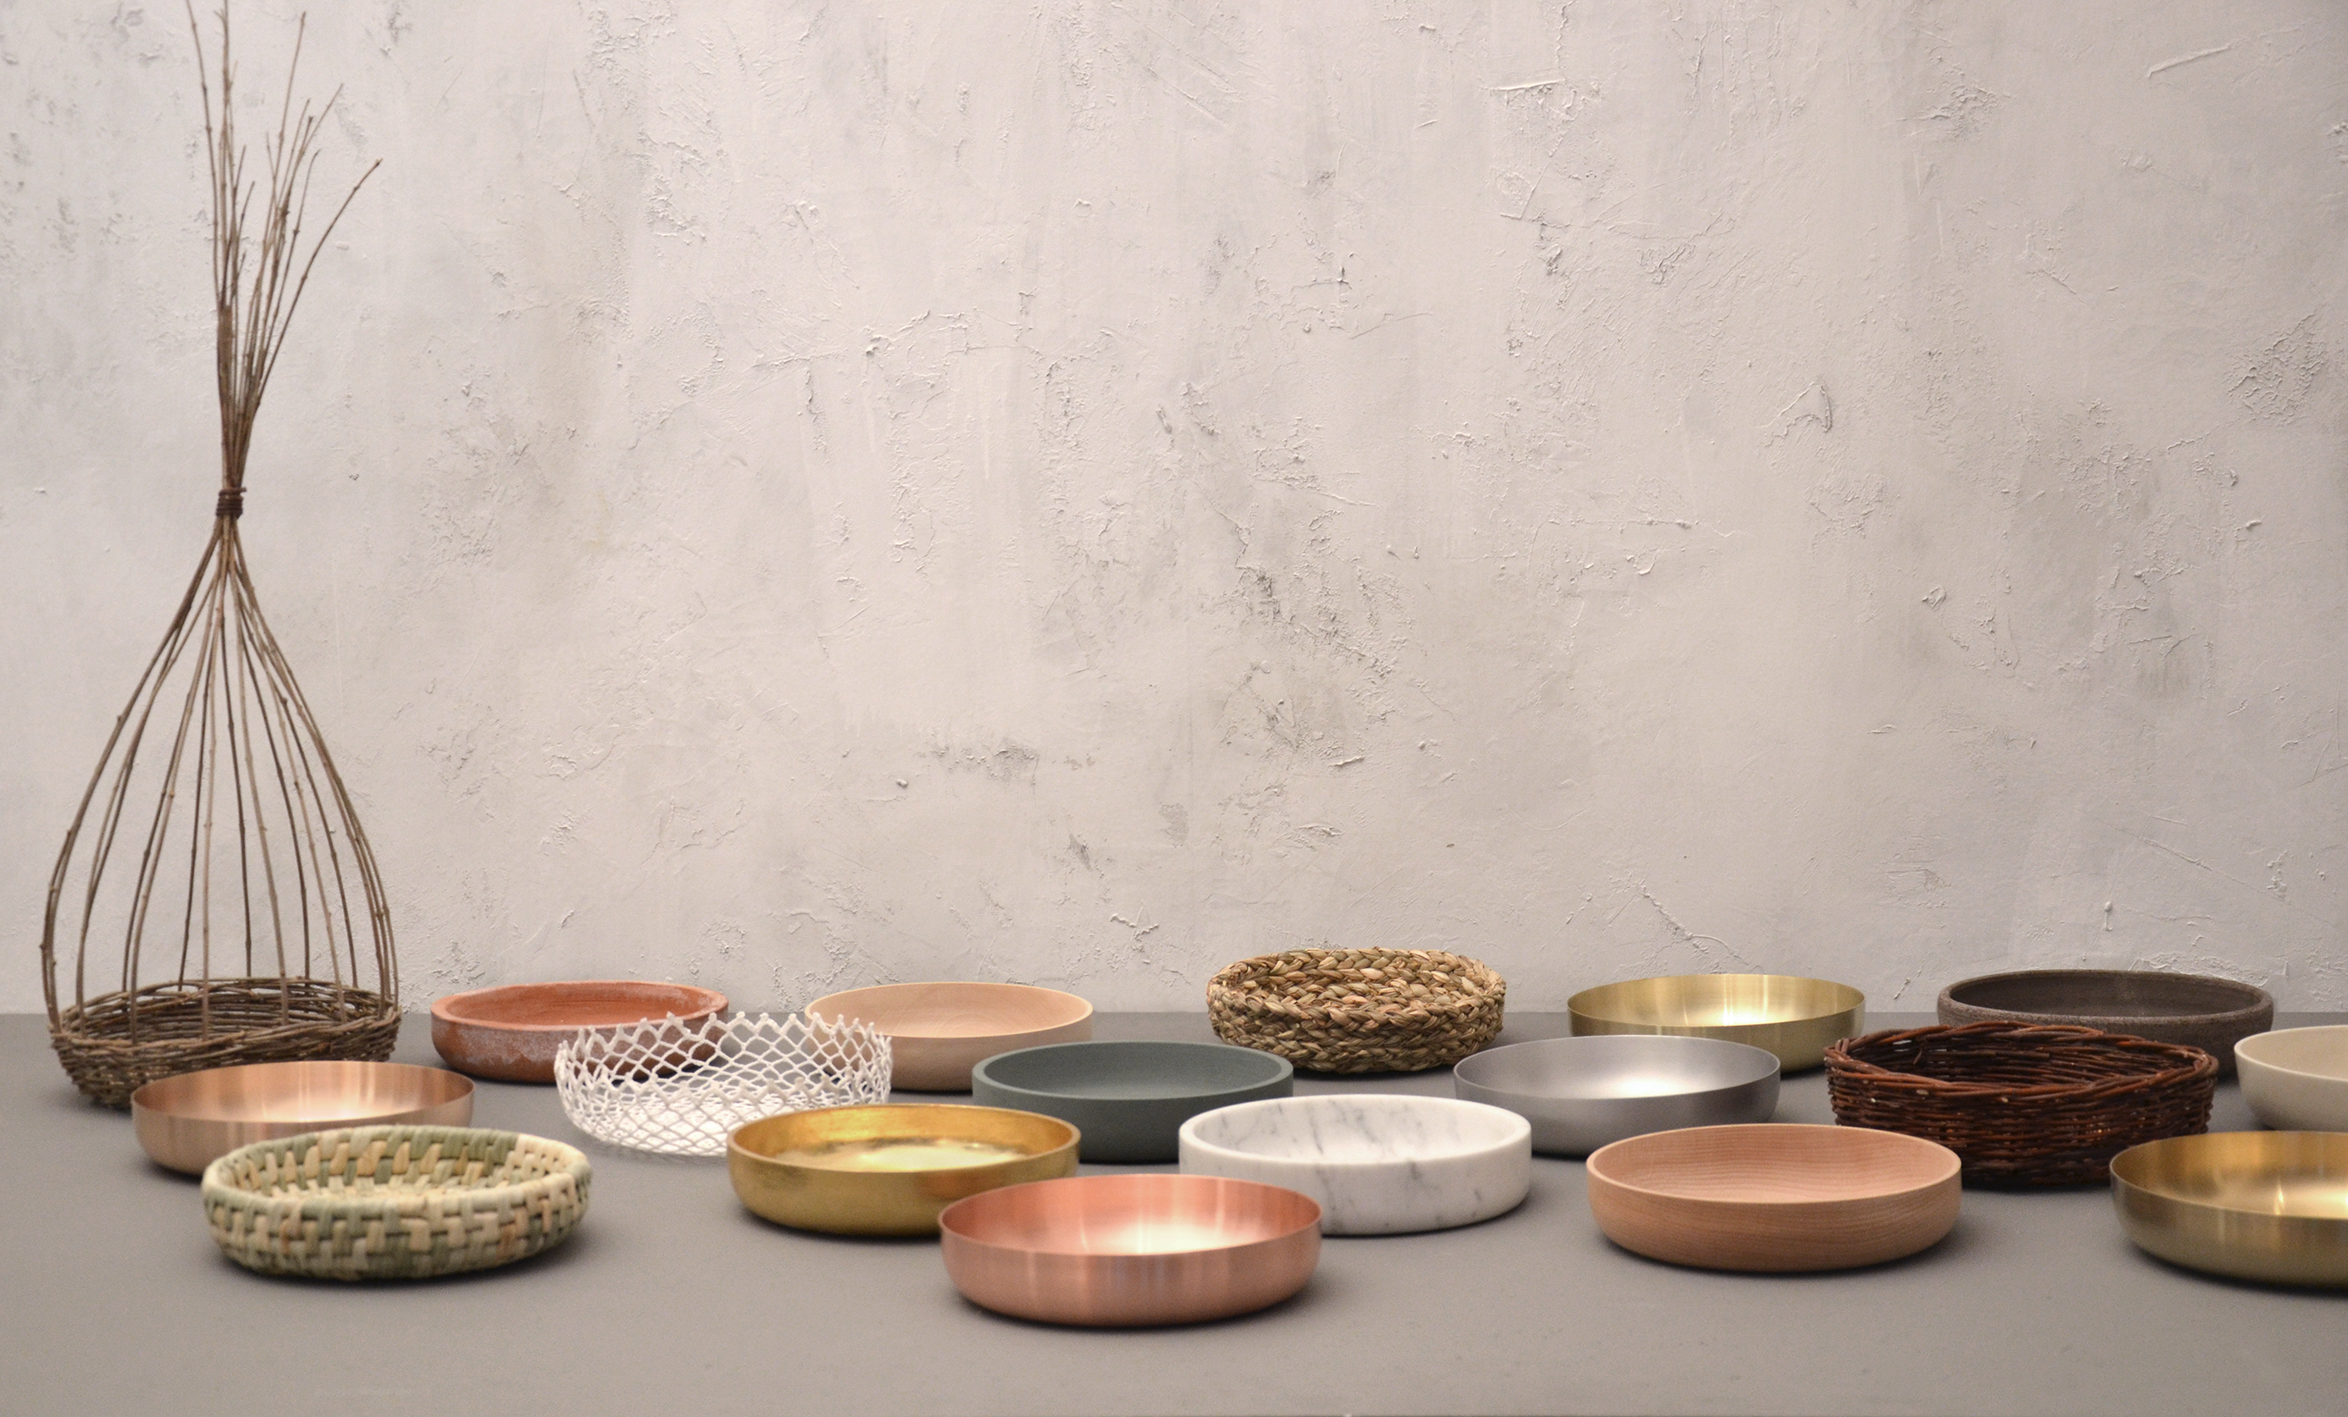 Diogenèa: a tale of bowls per il Salone del Mobile